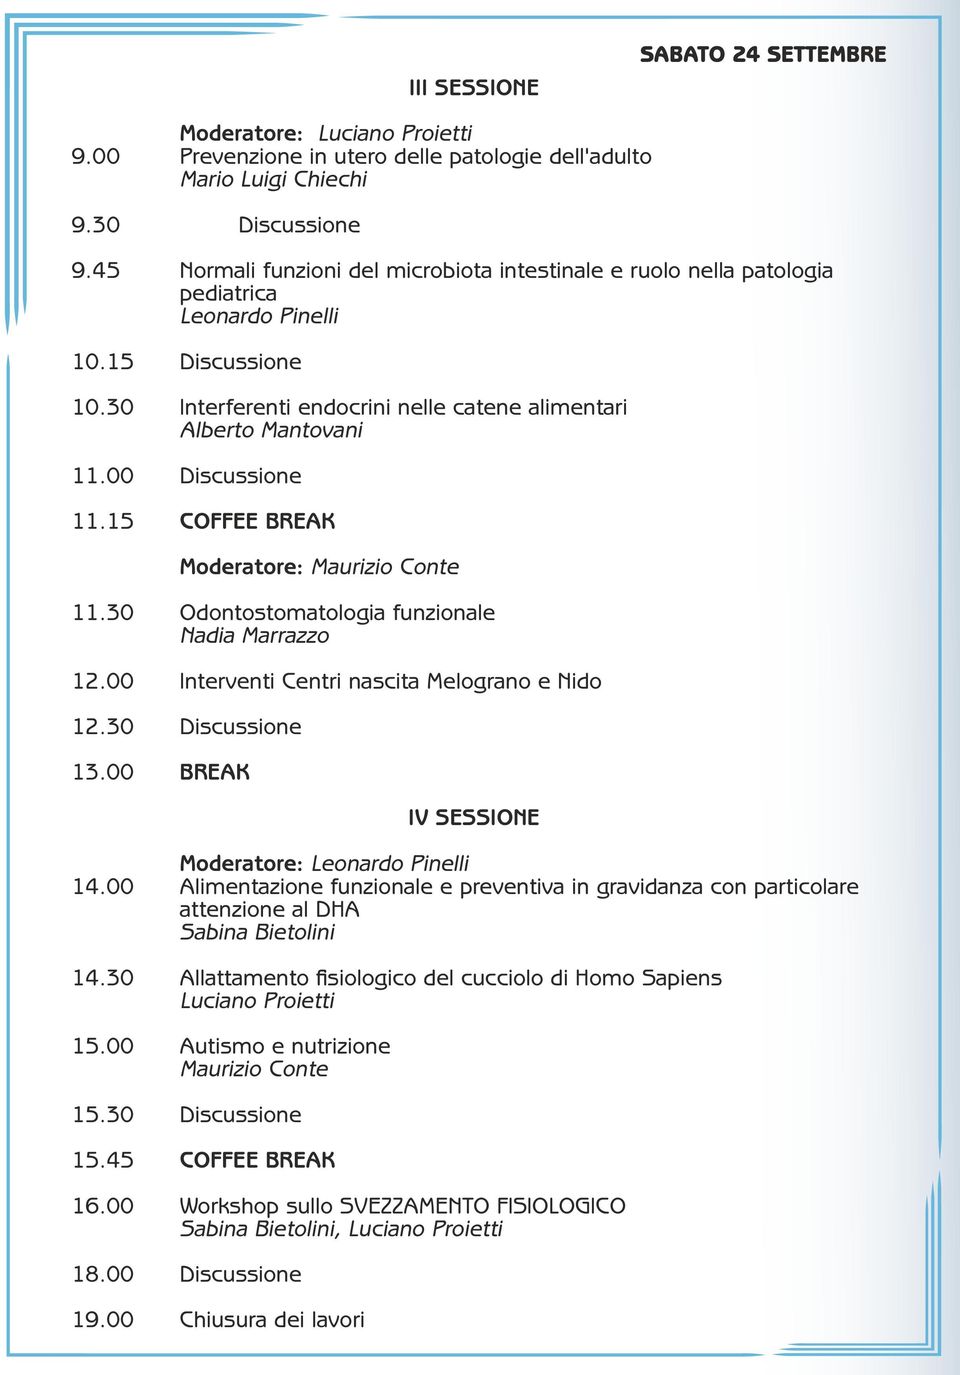 00 Discussione 11.15 COFFEE BREAK Moderatore: Maurizio Conte 11.30 Odontostomatologia funzionale Nadia Marrazzo 12.00 Interventi Centri nascita Melograno e Nido 12.30 Discussione 13.